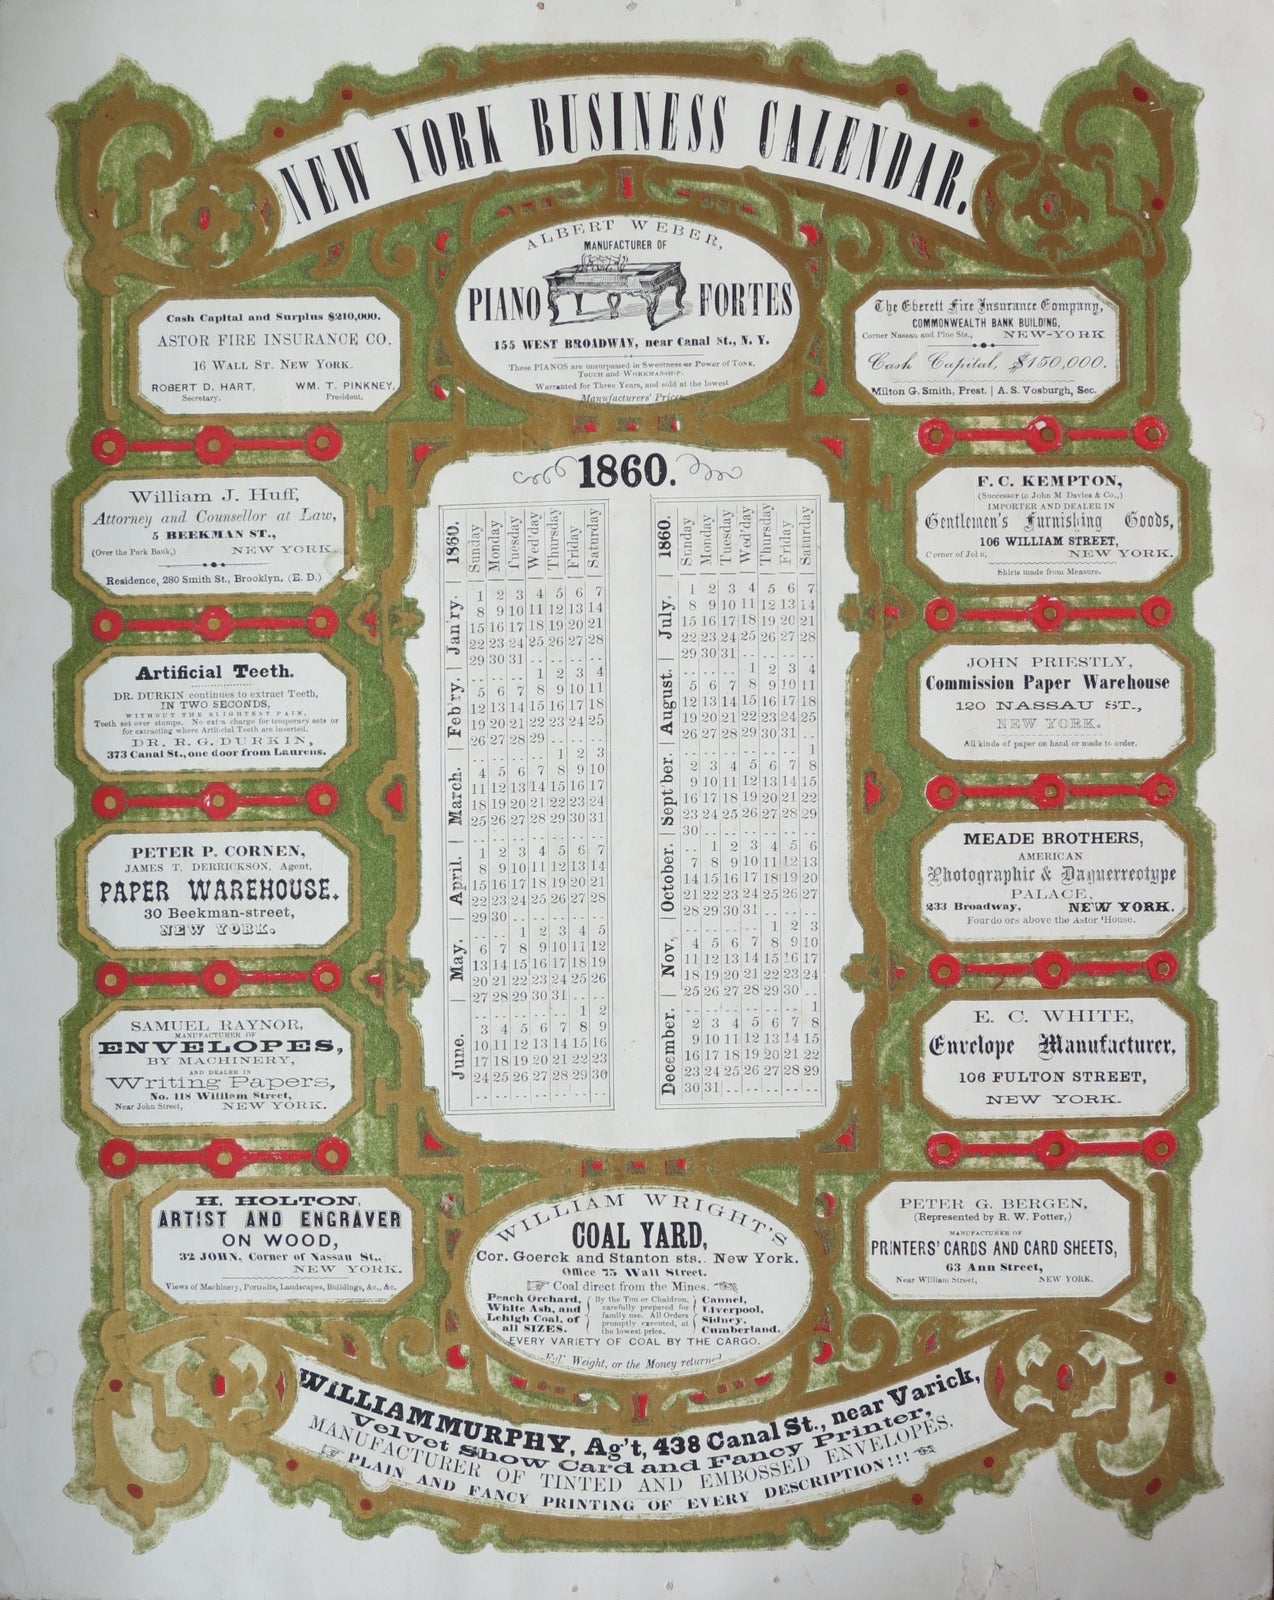 Item #17833 NEW YORK BUSINESS CALENDAR. 1860. Printer's Trade Card.